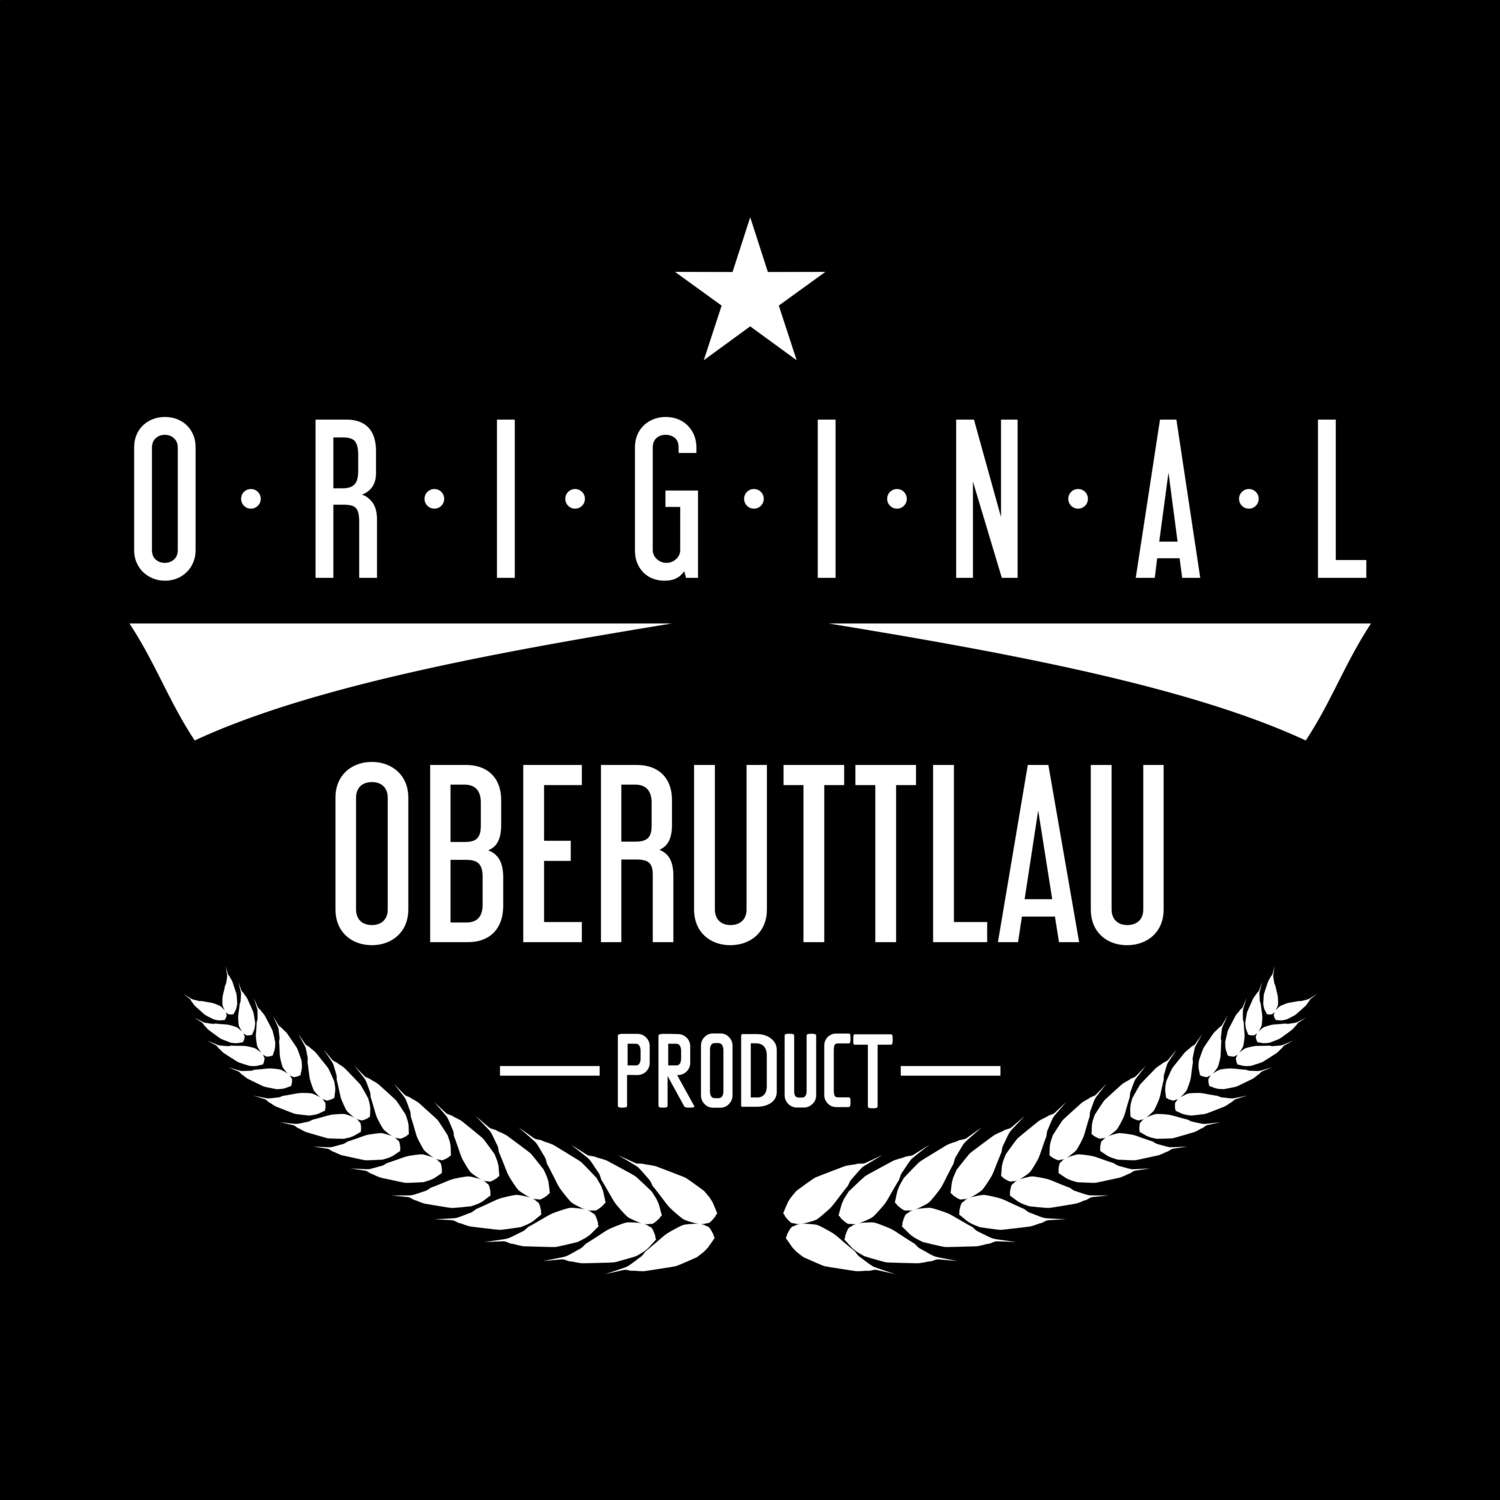 Oberuttlau T-Shirt »Original Product«